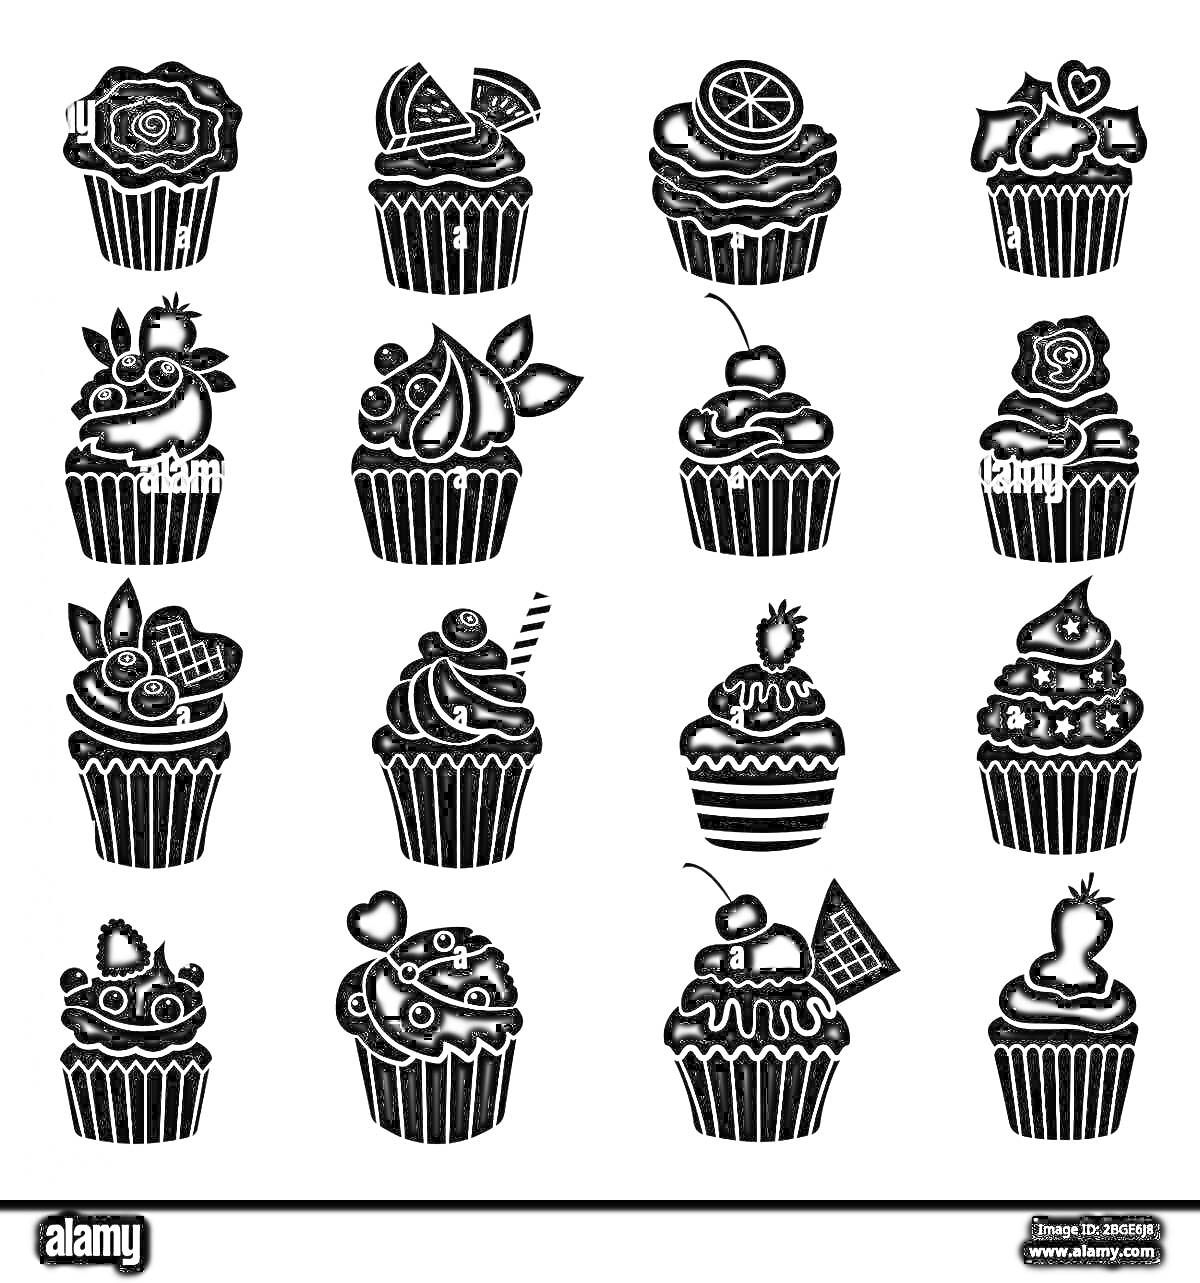 Раскраска Кейк попсы с различными украшениями (ягоды, шоколад, фрукты, крем, печенье, конфеты)